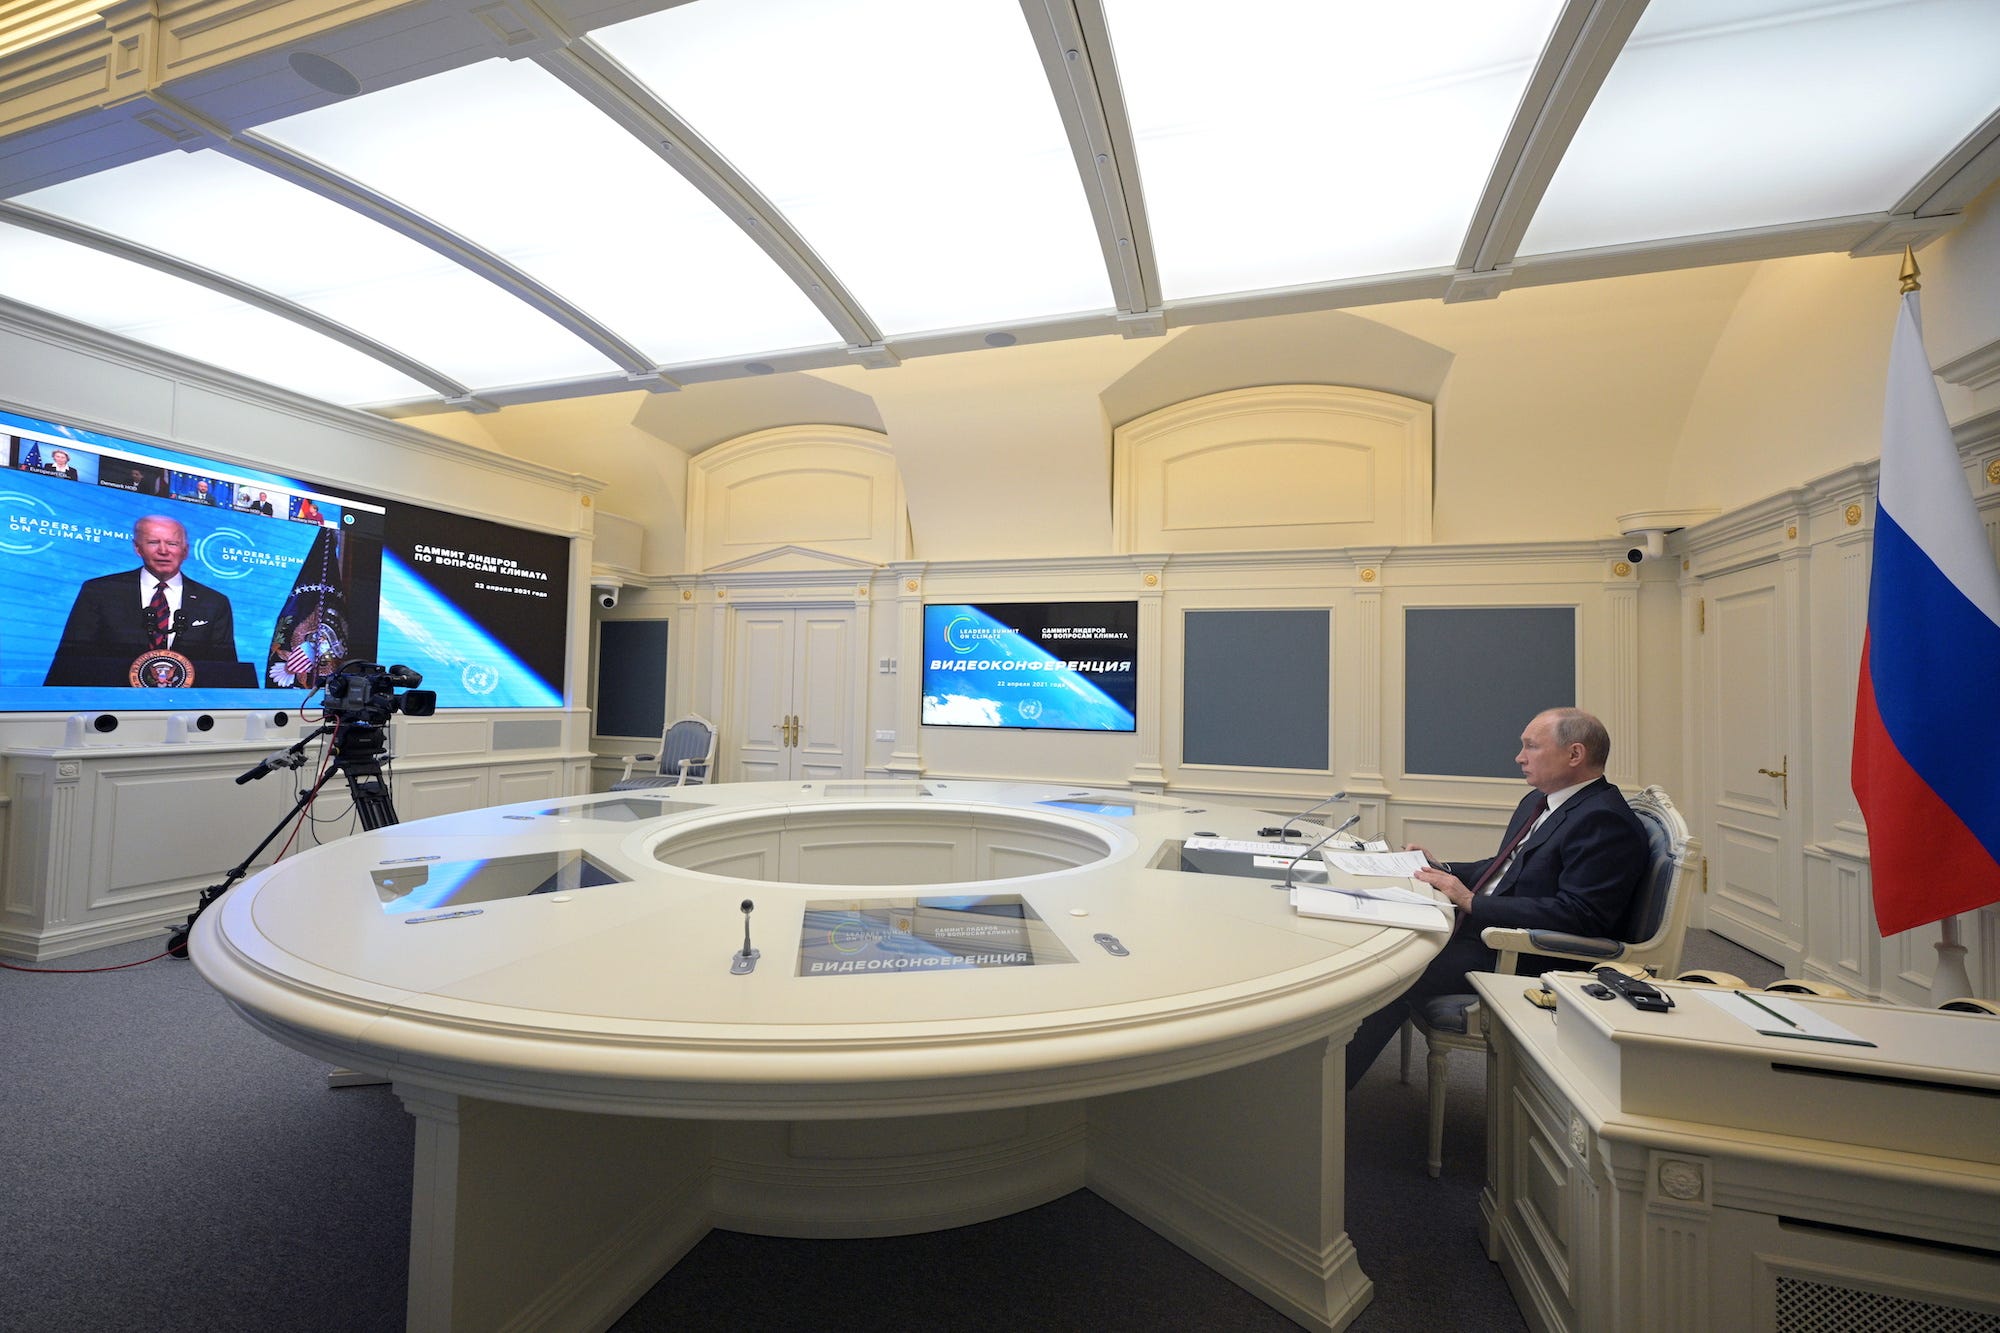 De Russische president Vladimir Poetin en de Amerikaanse president Joe Biden tijdens een virtuele klimaattop. Foto: Sputnik/Alexei Druzhinin/Kremlin via Reuters